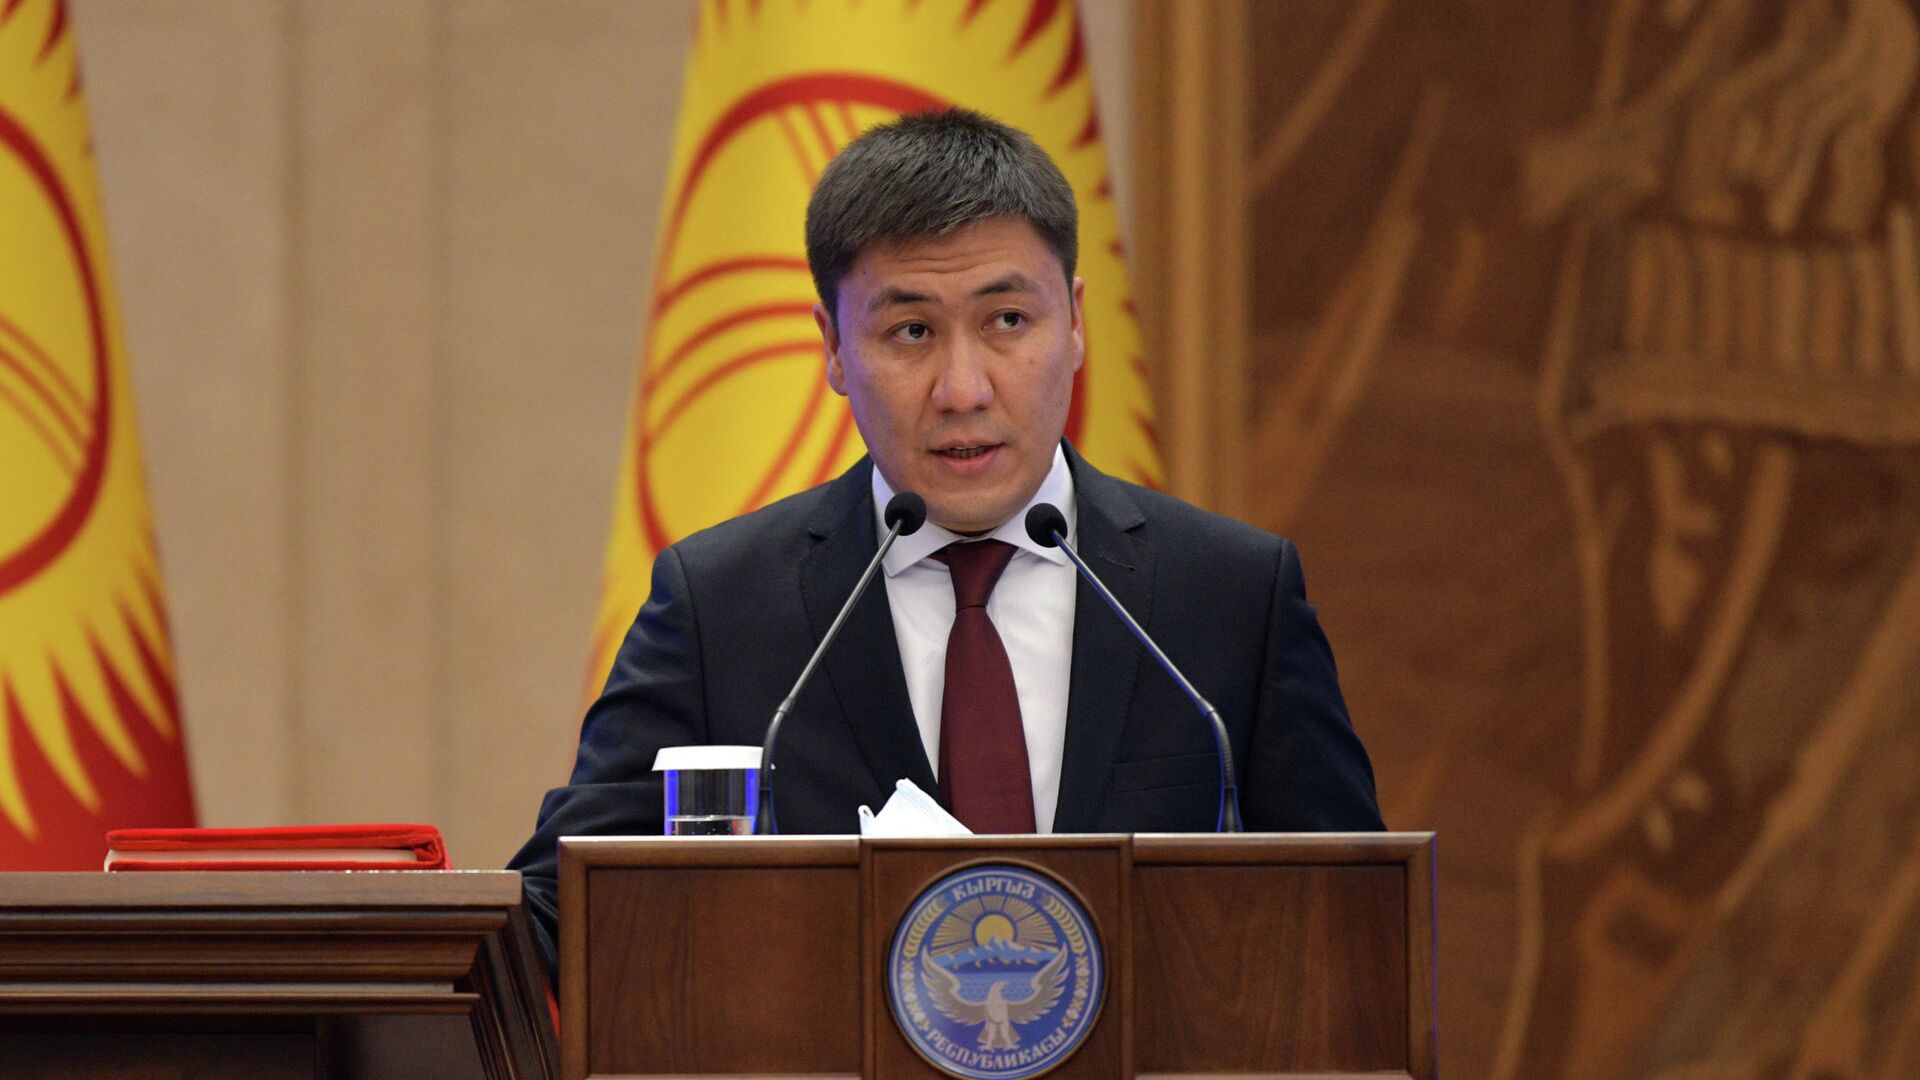 Министра образования Кыргызстана поймали со $110 тысячами — видео